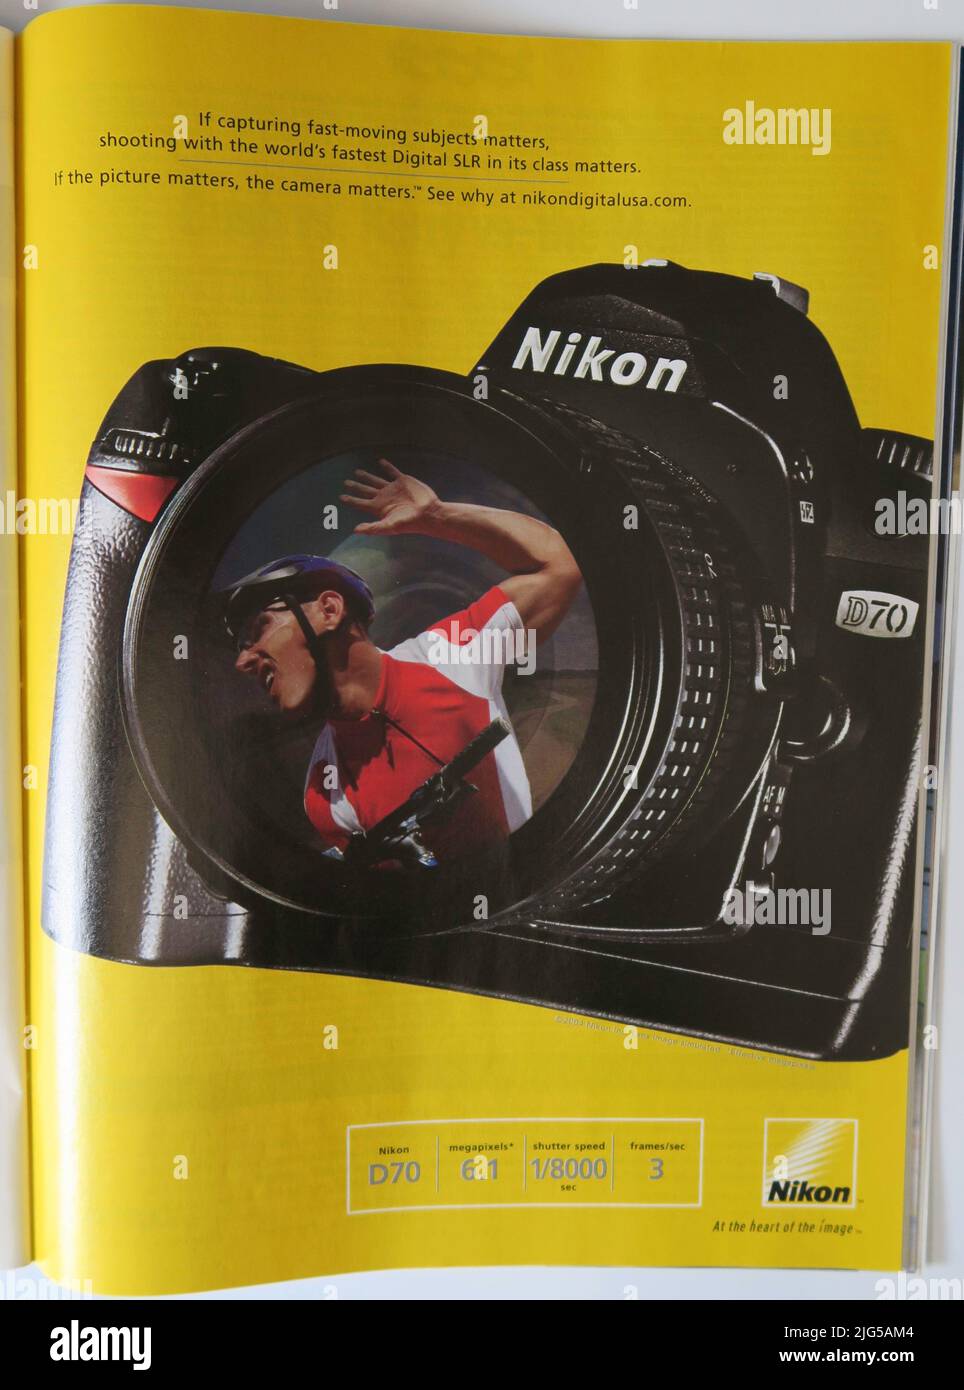 Nikon d70 Banque de photographies et d'images à haute résolution - Alamy